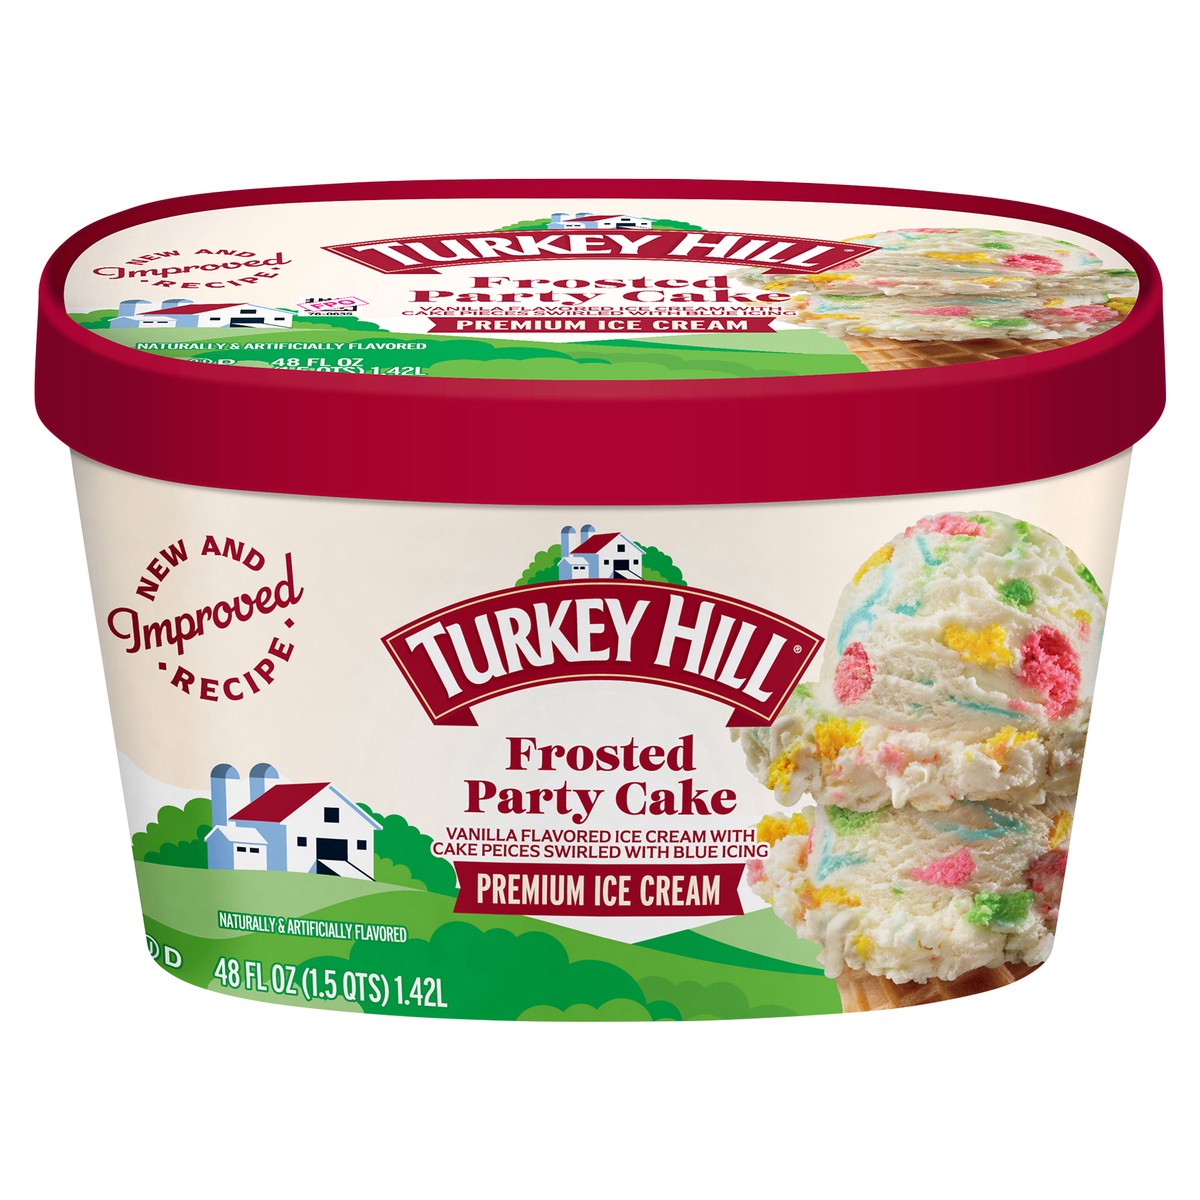 slide 1 of 10, Turkey Hill Party Cake Original Recipe Premium Ice Cream, 48 fl oz